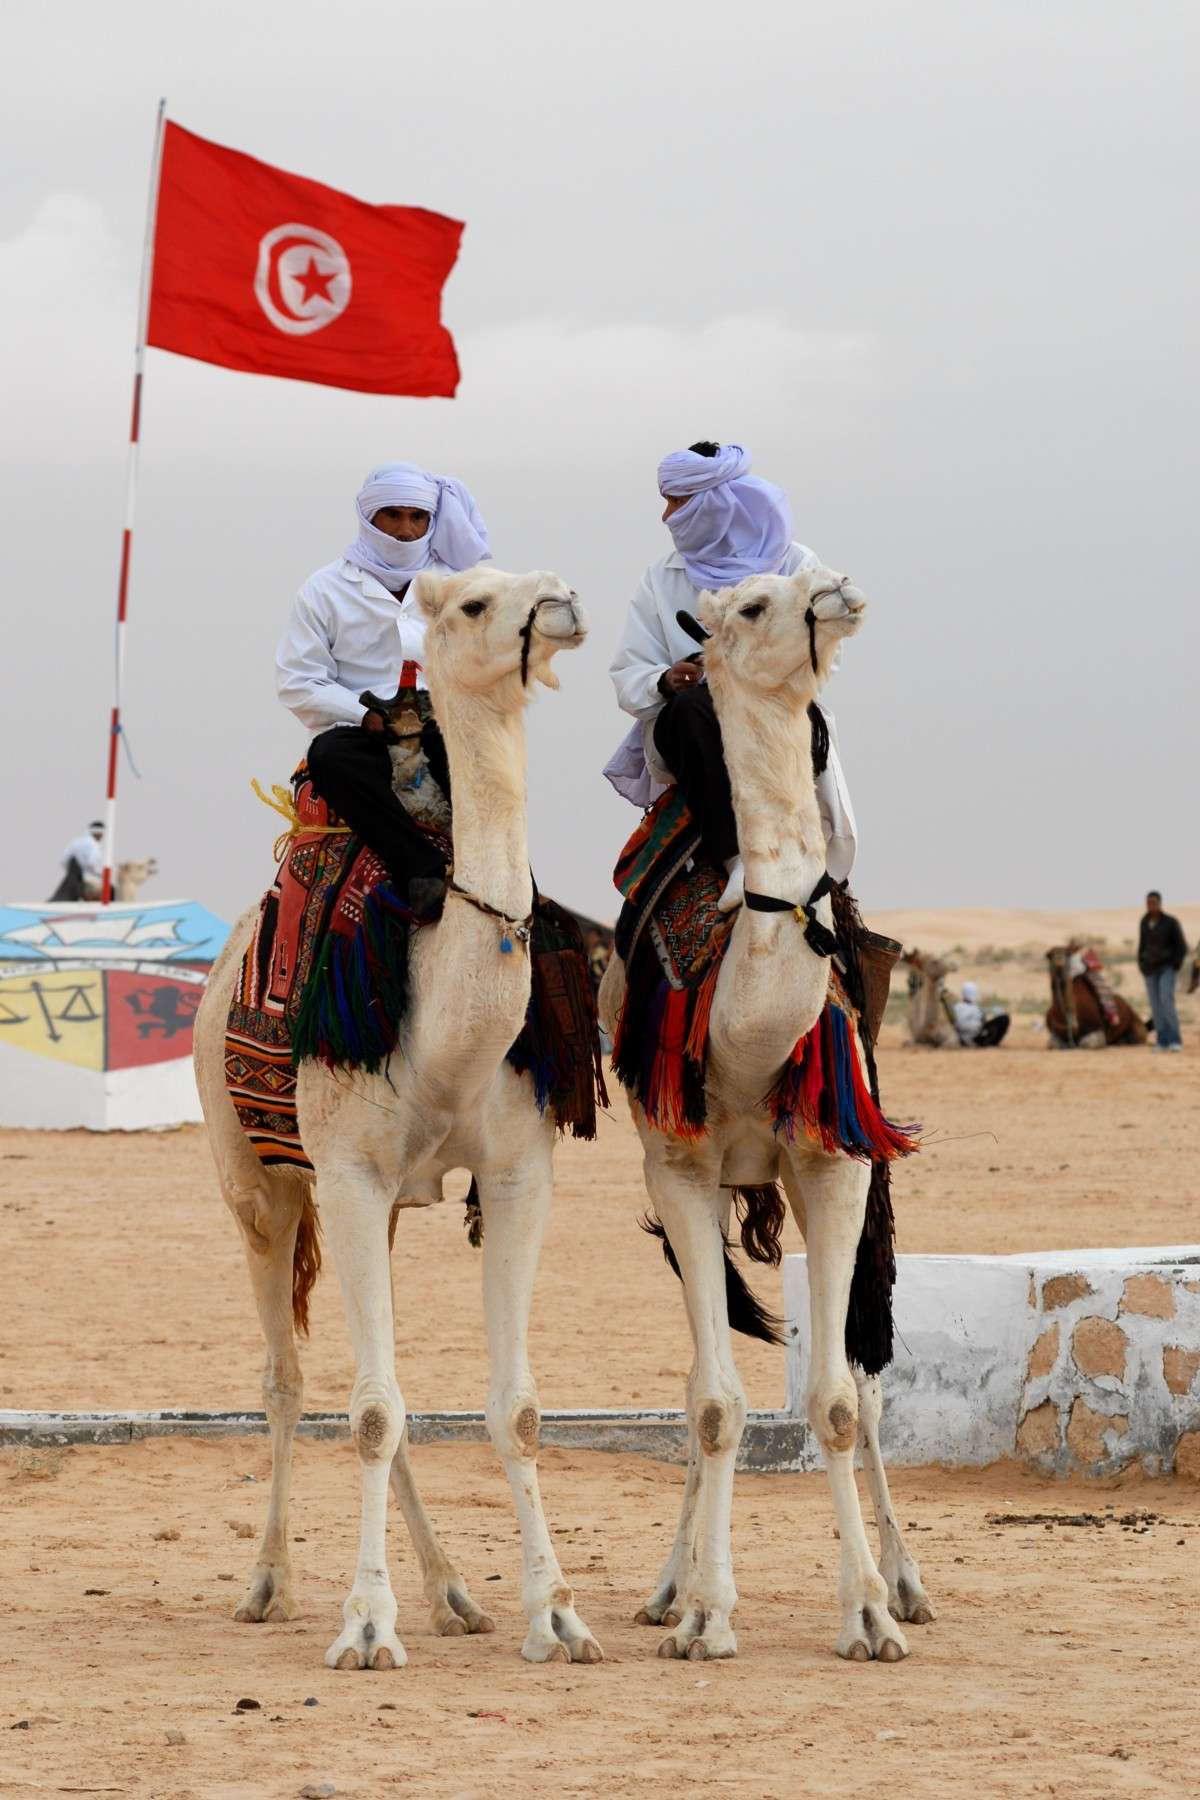 Voyagez autrement en Tunisie